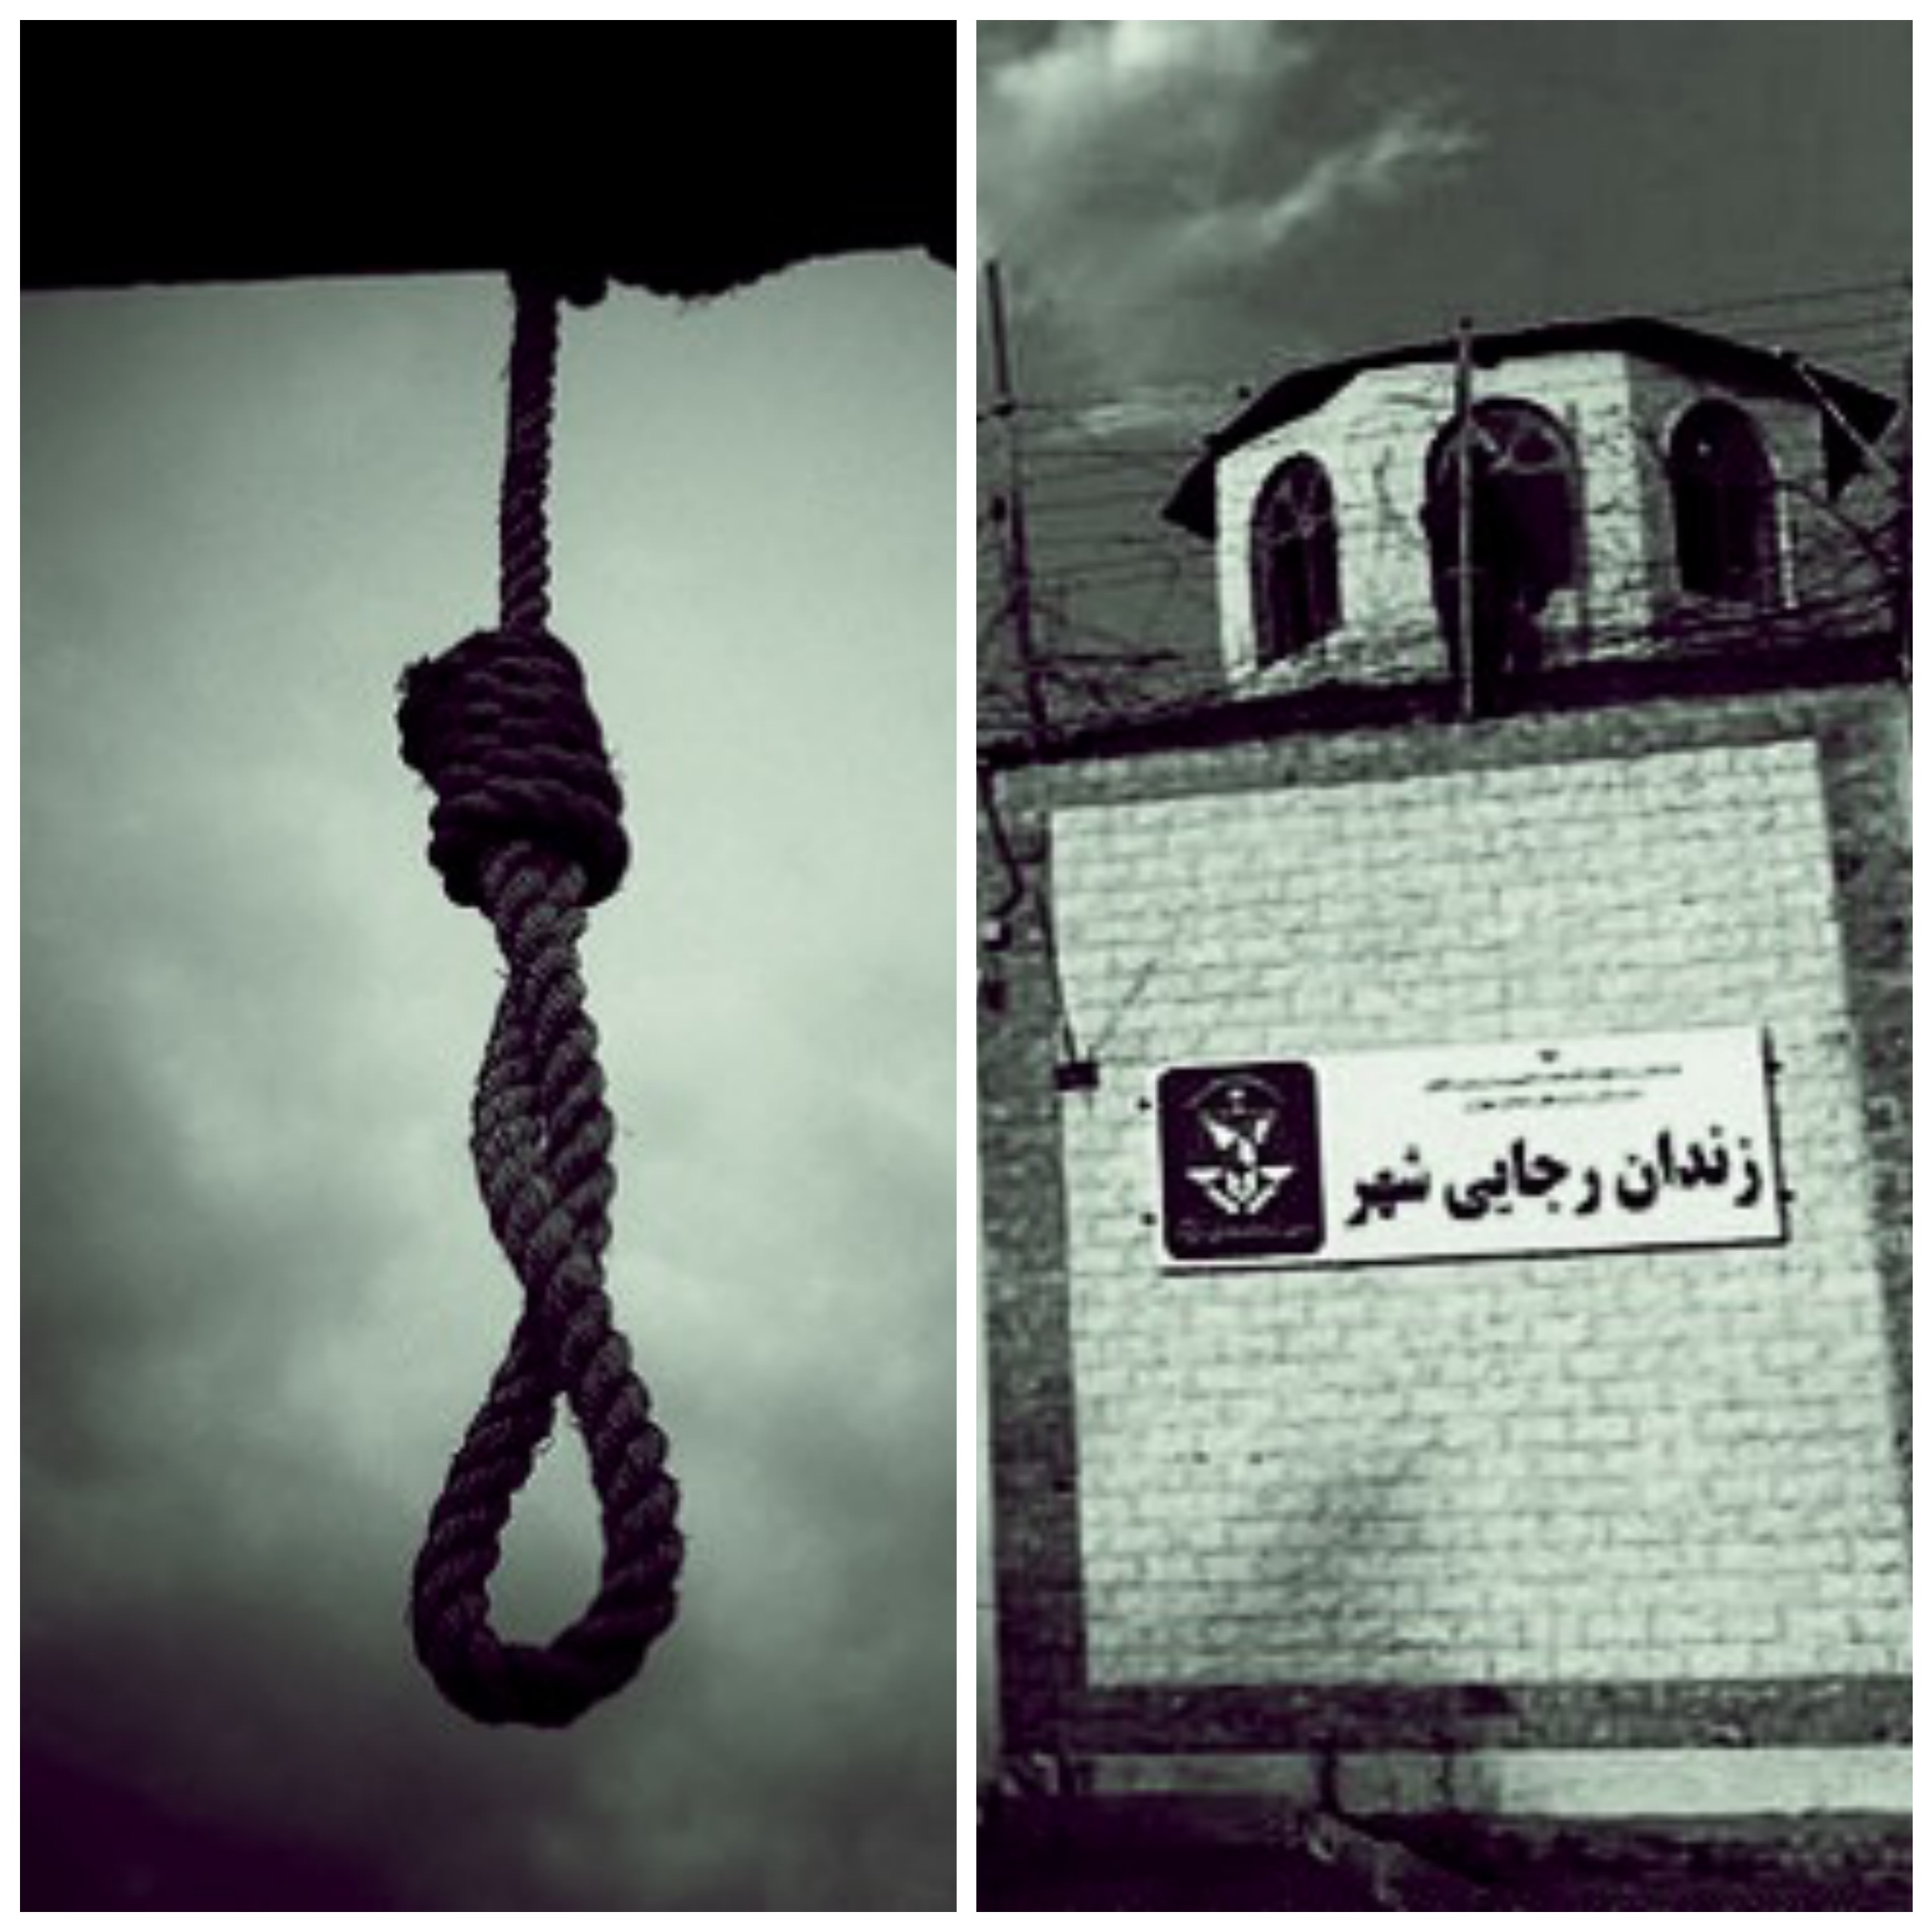 احتمال اعدام ۳۶ زندانی اهل سنت با طلوع خورشید فردا/ دیده شدن هفت تابوت